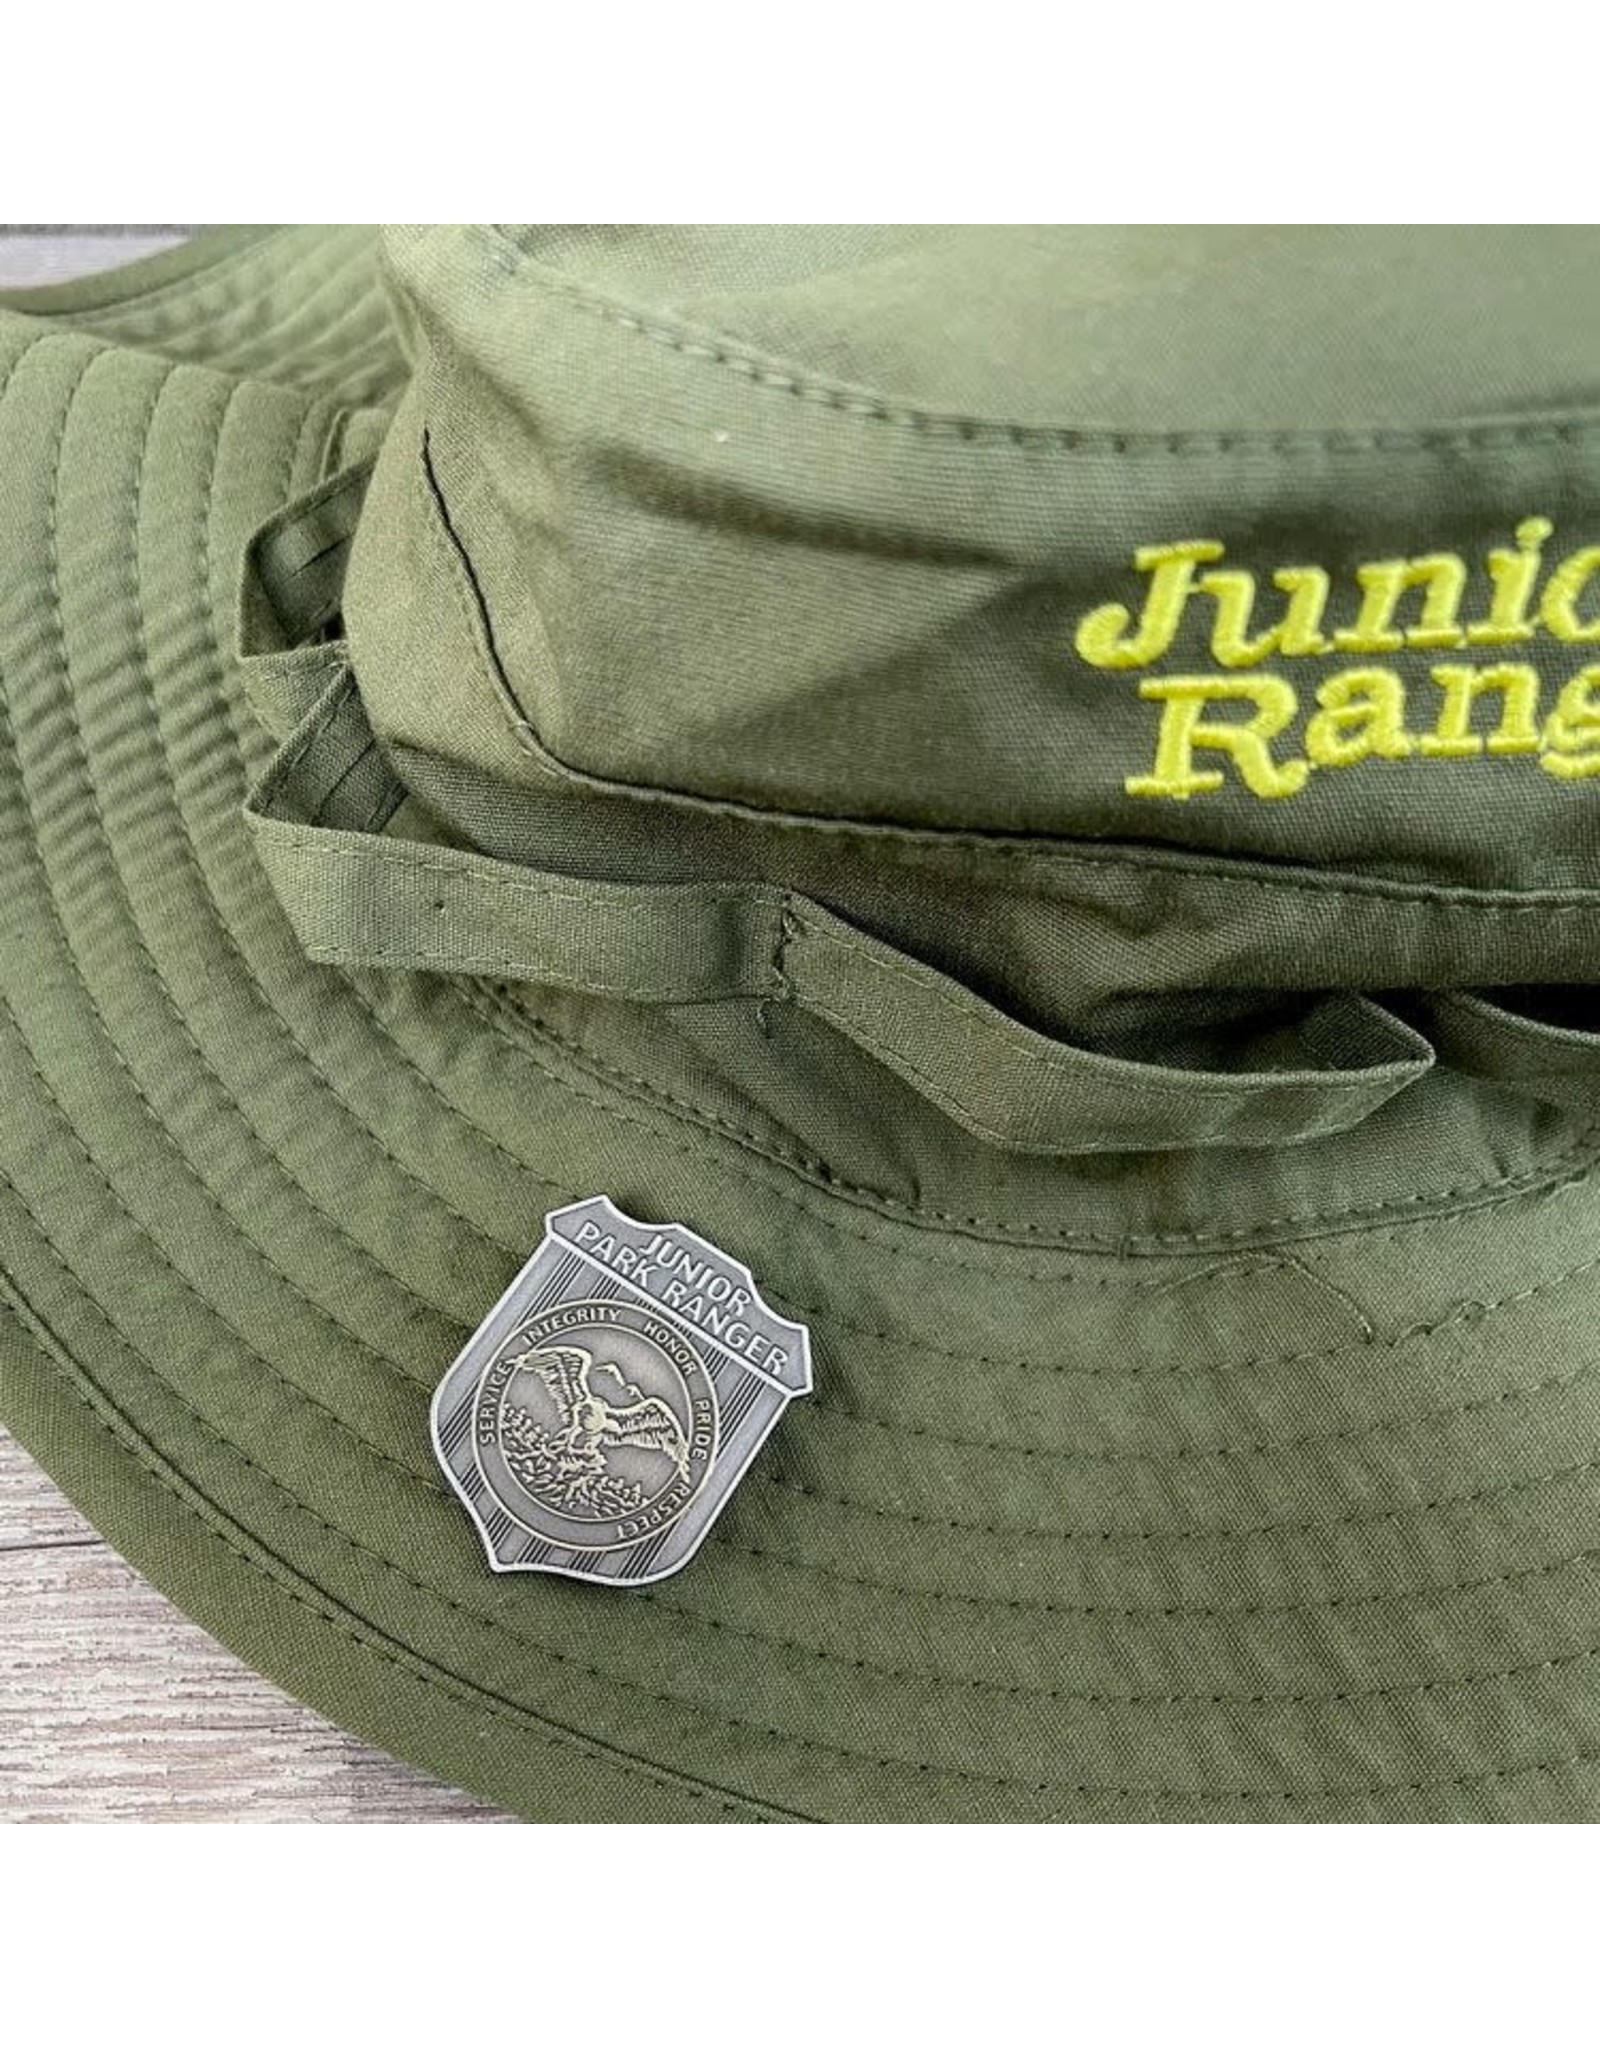 Junior Ranger Junior Ranger Badge